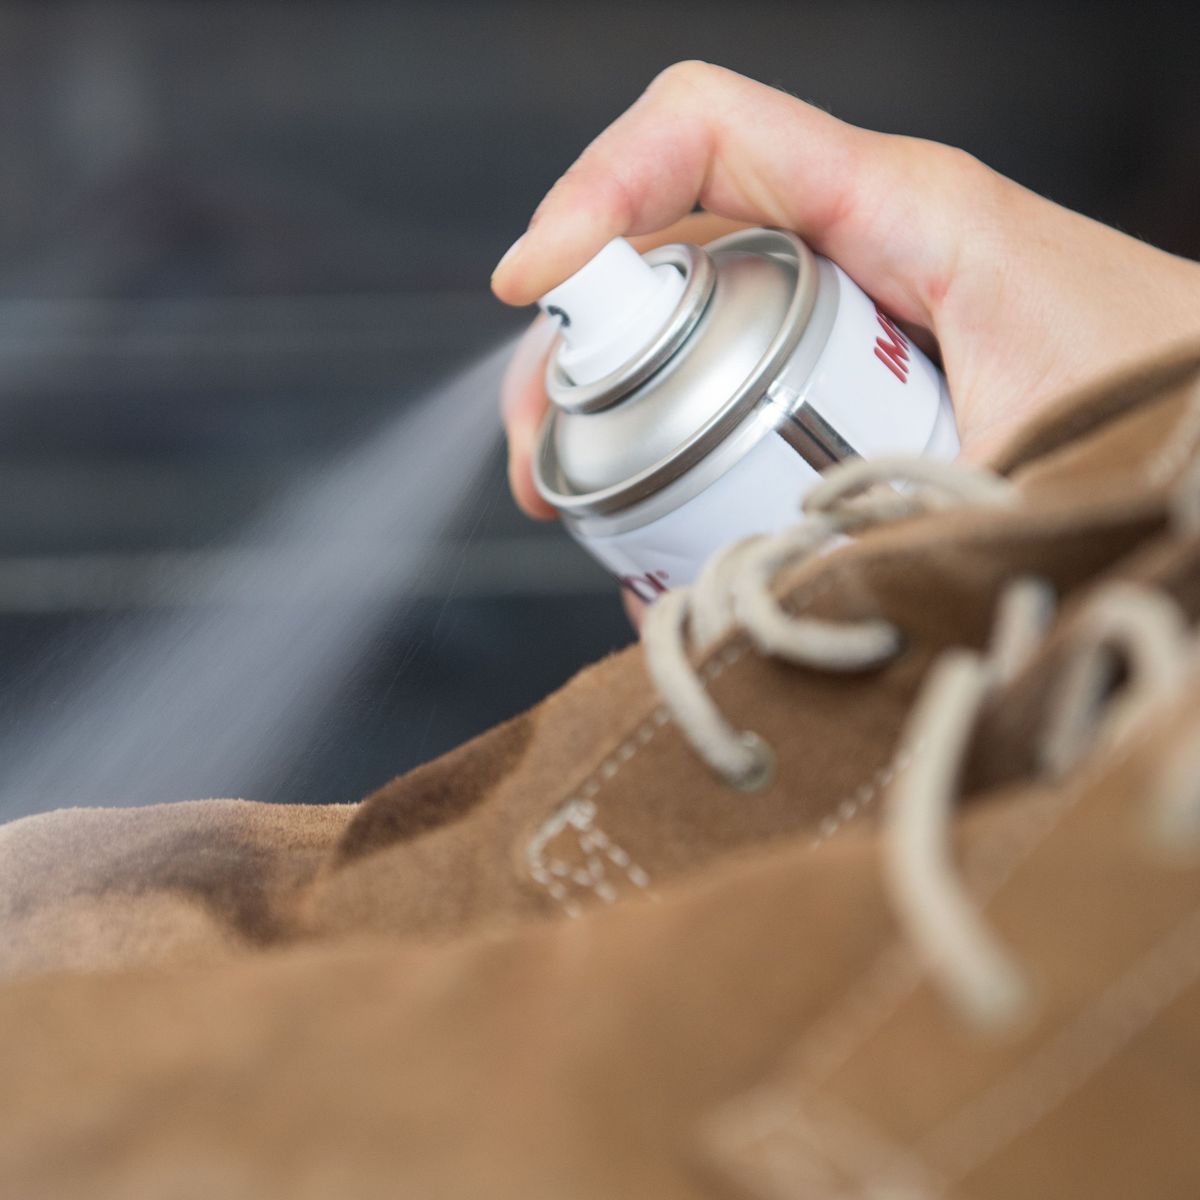 Schuhe wasserdicht machen: Hausmittel und Tipps